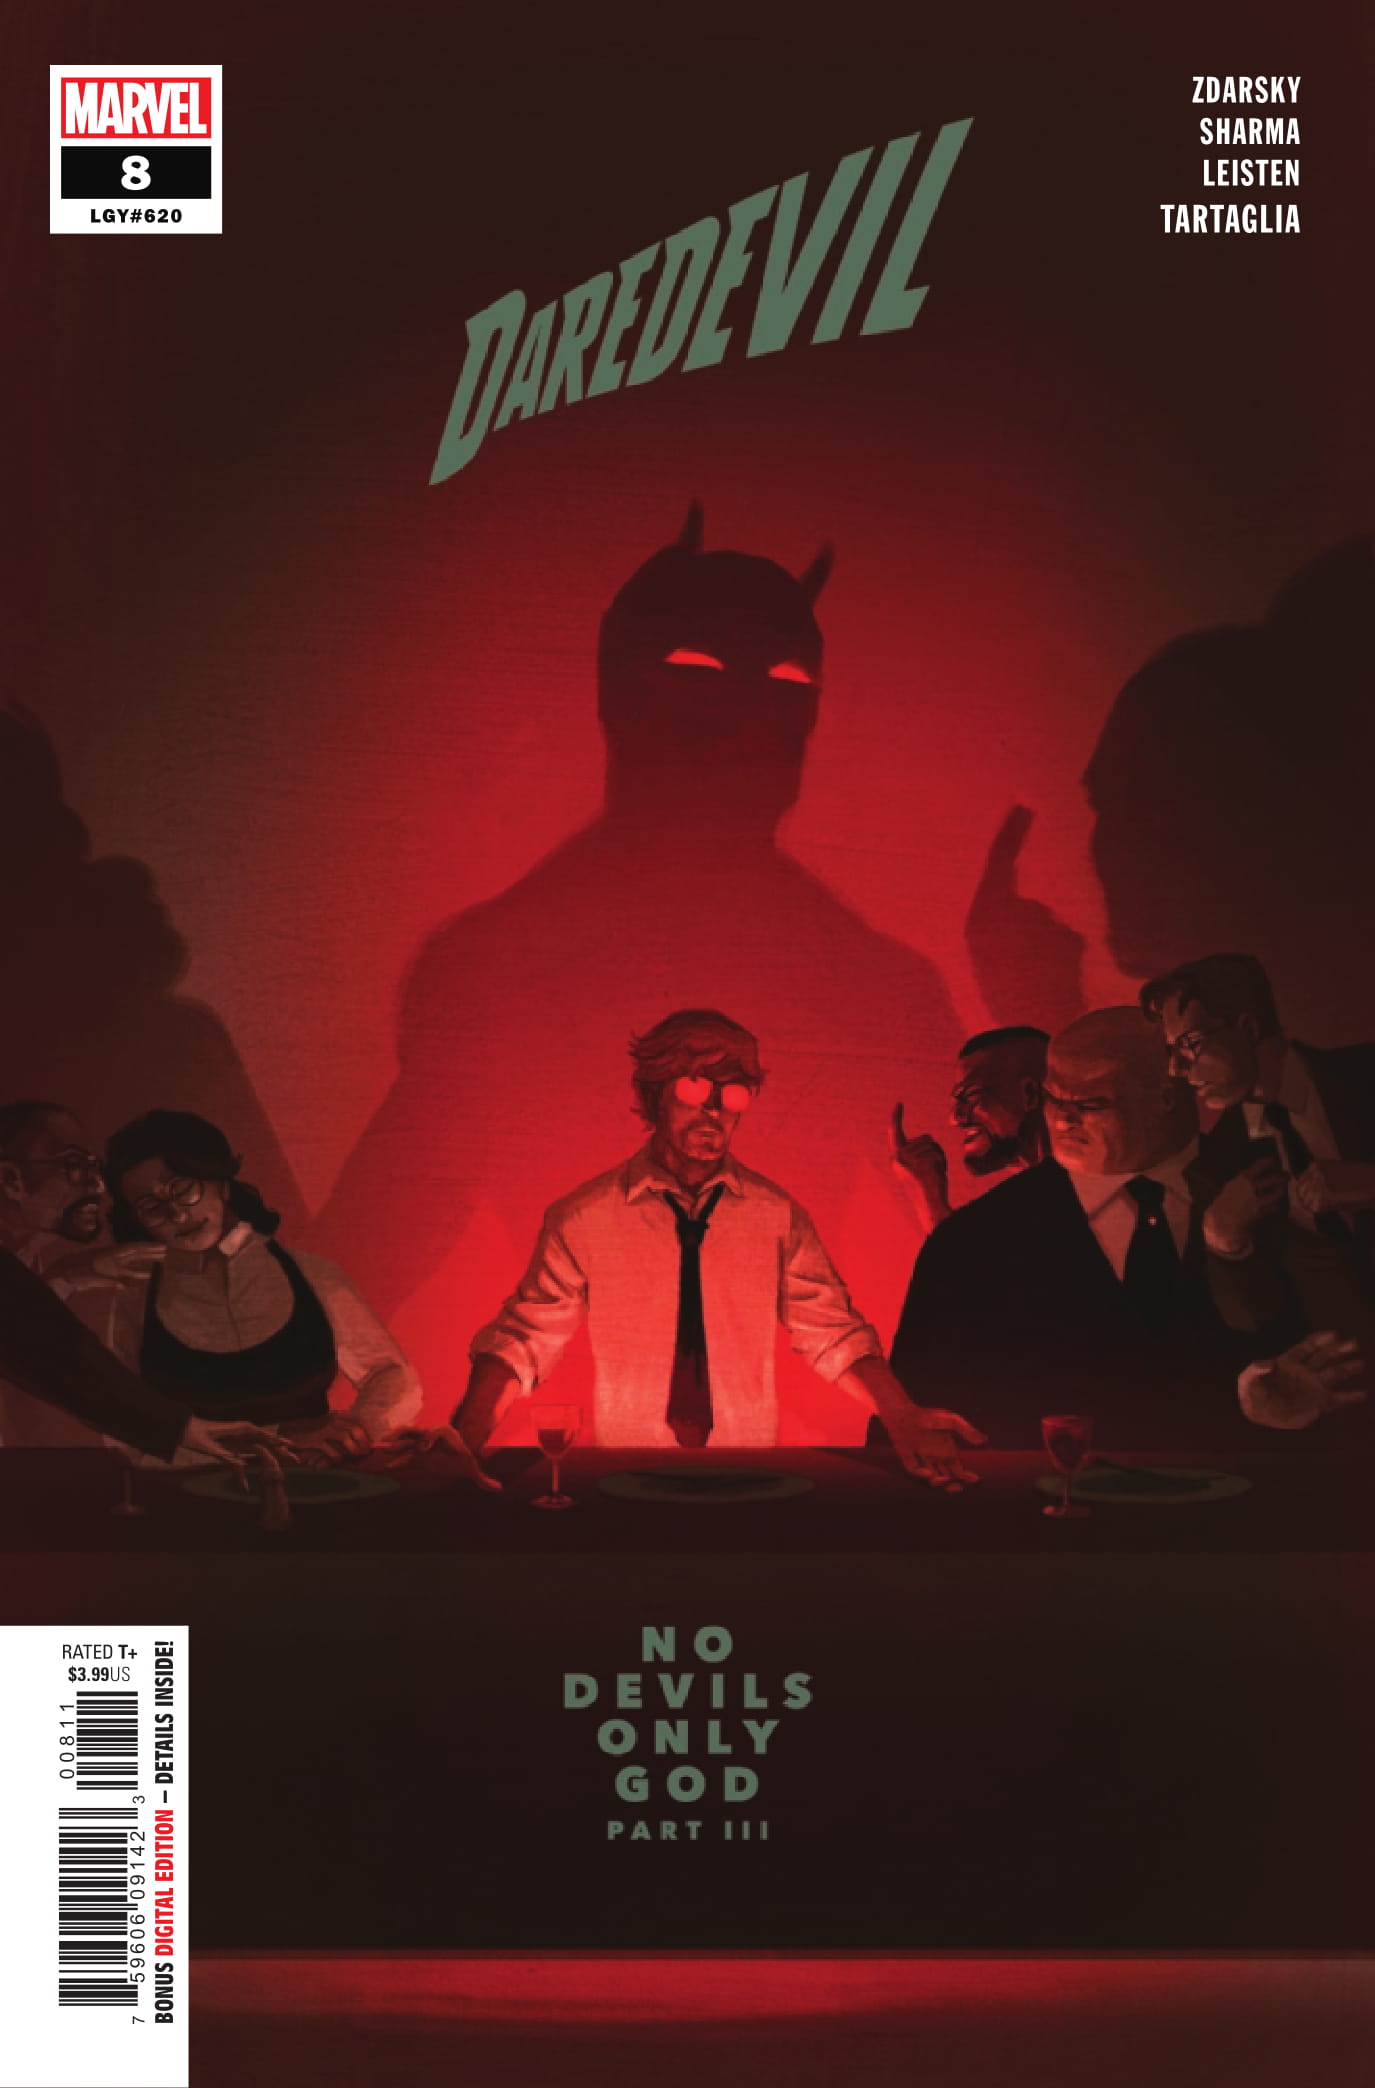 Daredevil #8 cover art by Chip Zdarsky